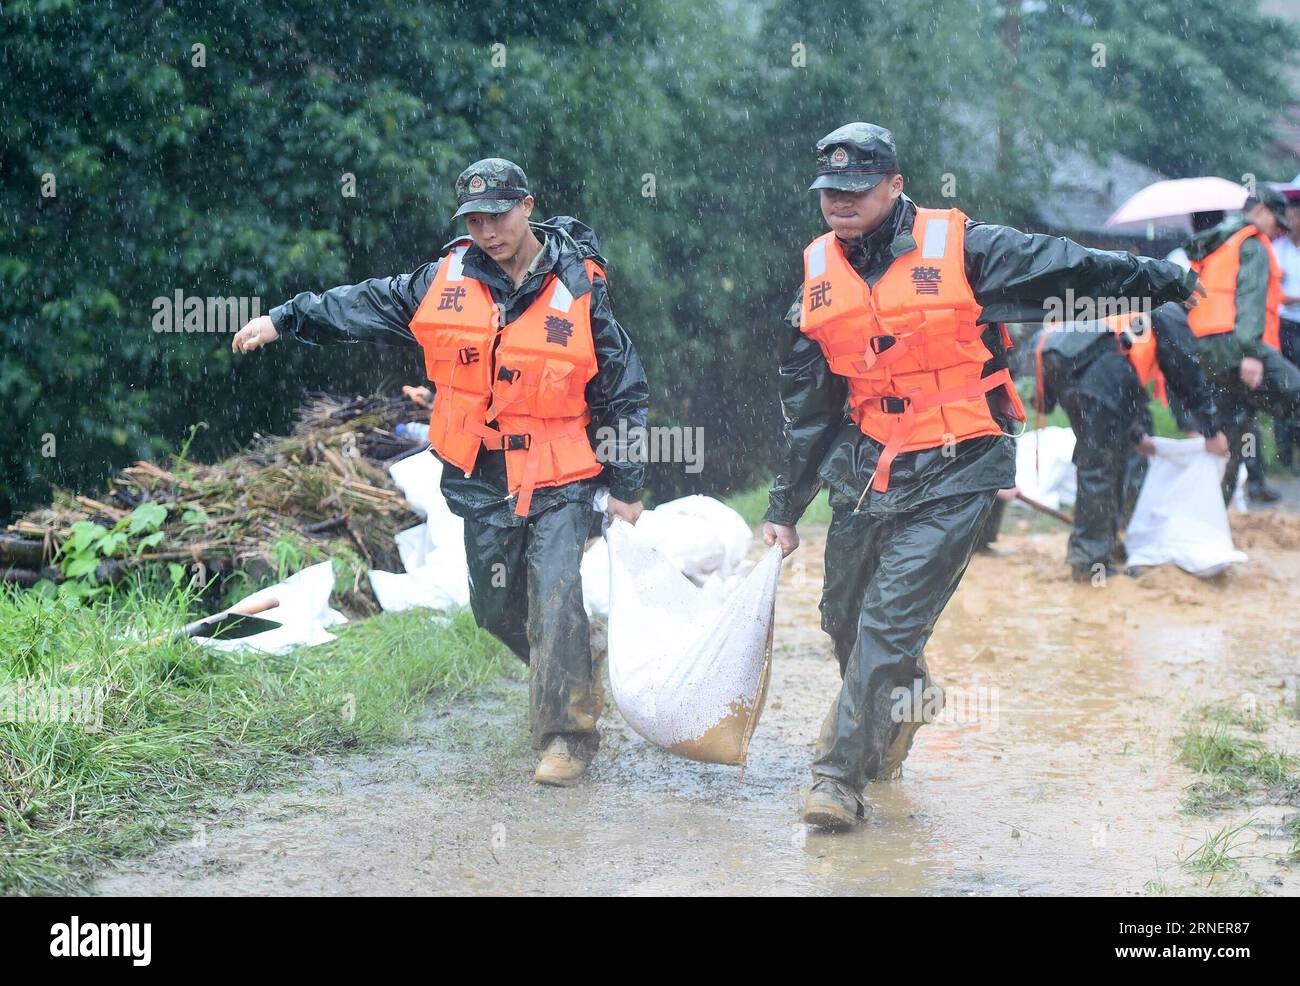 (160702) -- ANQING, 2 luglio 2016 -- gli agenti di polizia armati portano un sacco di sabbia e vanno in soccorso nel villaggio Mingfeng della contea di Huaining nella città di Anqing, nella provincia di Anhui della Cina orientale, 2 luglio 2016. A causa delle forti piogge, i soccorritori sono stati inviati per evacuare i residenti intrappolati nelle inondazioni di Anqing City sabato. (Wyl) CHINA-ANHUI-FLOOD-RESCUE (CN) GuoxChen PUBLICATIONxNOTxINxCHN 160702 Anqing 2 luglio 2016 gli agenti di polizia armati portano un sacco di sabbia e vanno in soccorso nel villaggio di Huaining County nella città di Anqing nella provincia di Anhui della Cina orientale 2 luglio 2016 a causa di Heavy Rainfall Rescue sono stati inviati per evacuare re Foto Stock